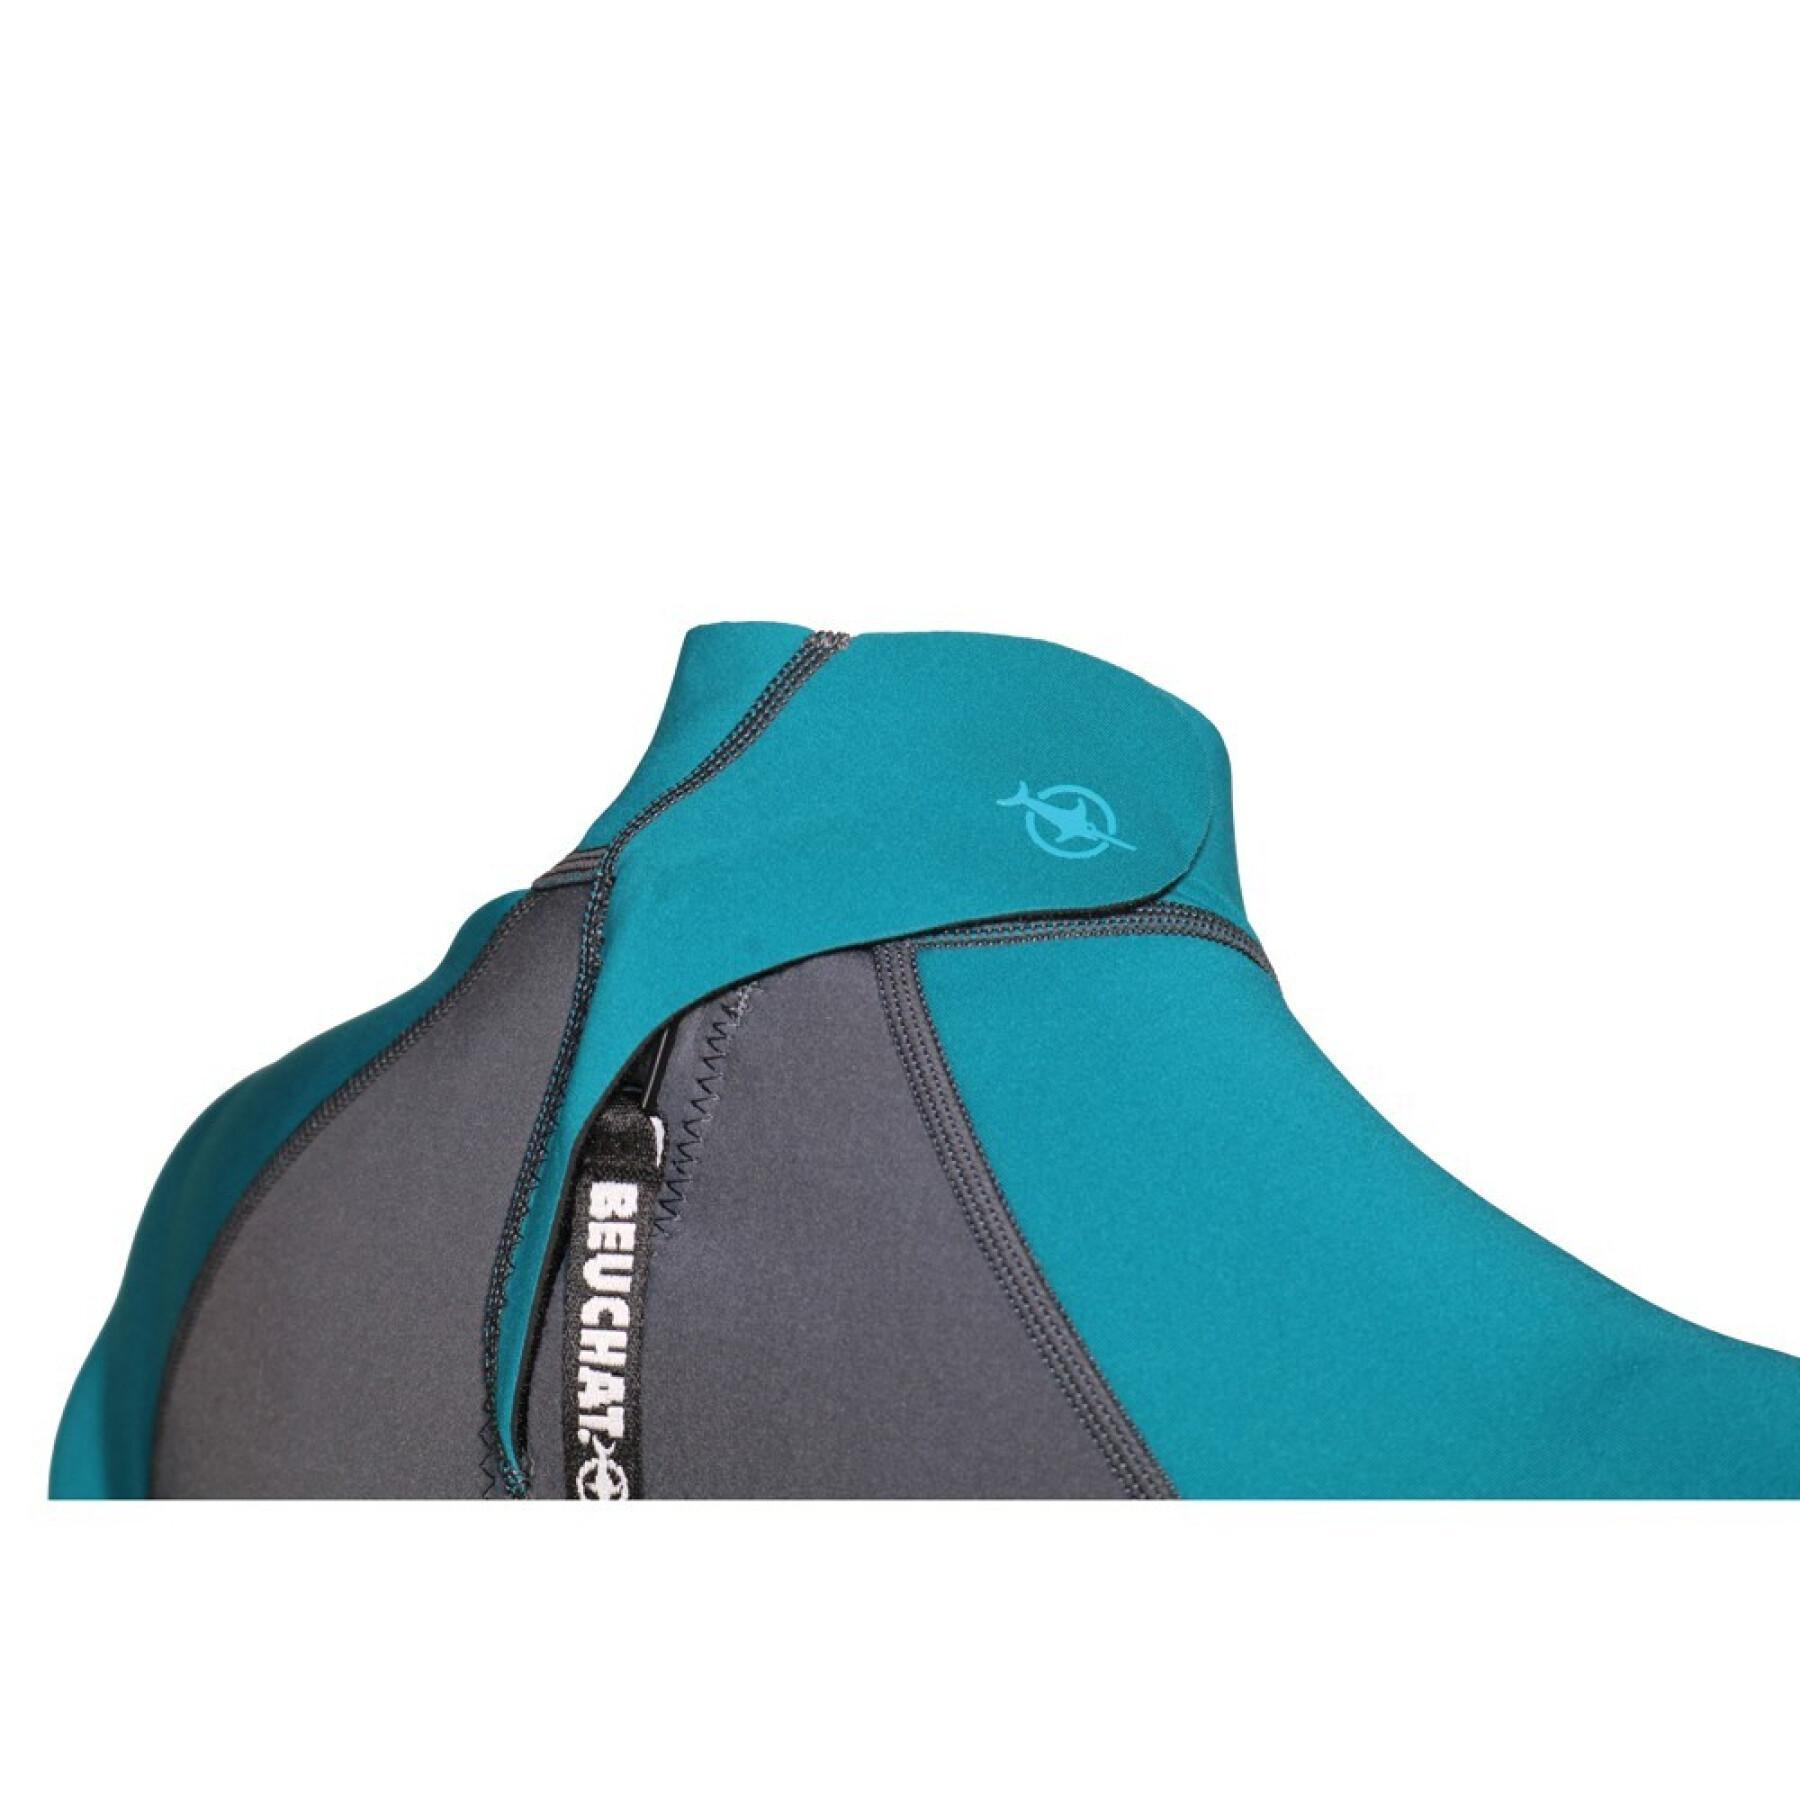 Damen-Rückentauchanzug mit Reißverschluss Beuchat 2 mm